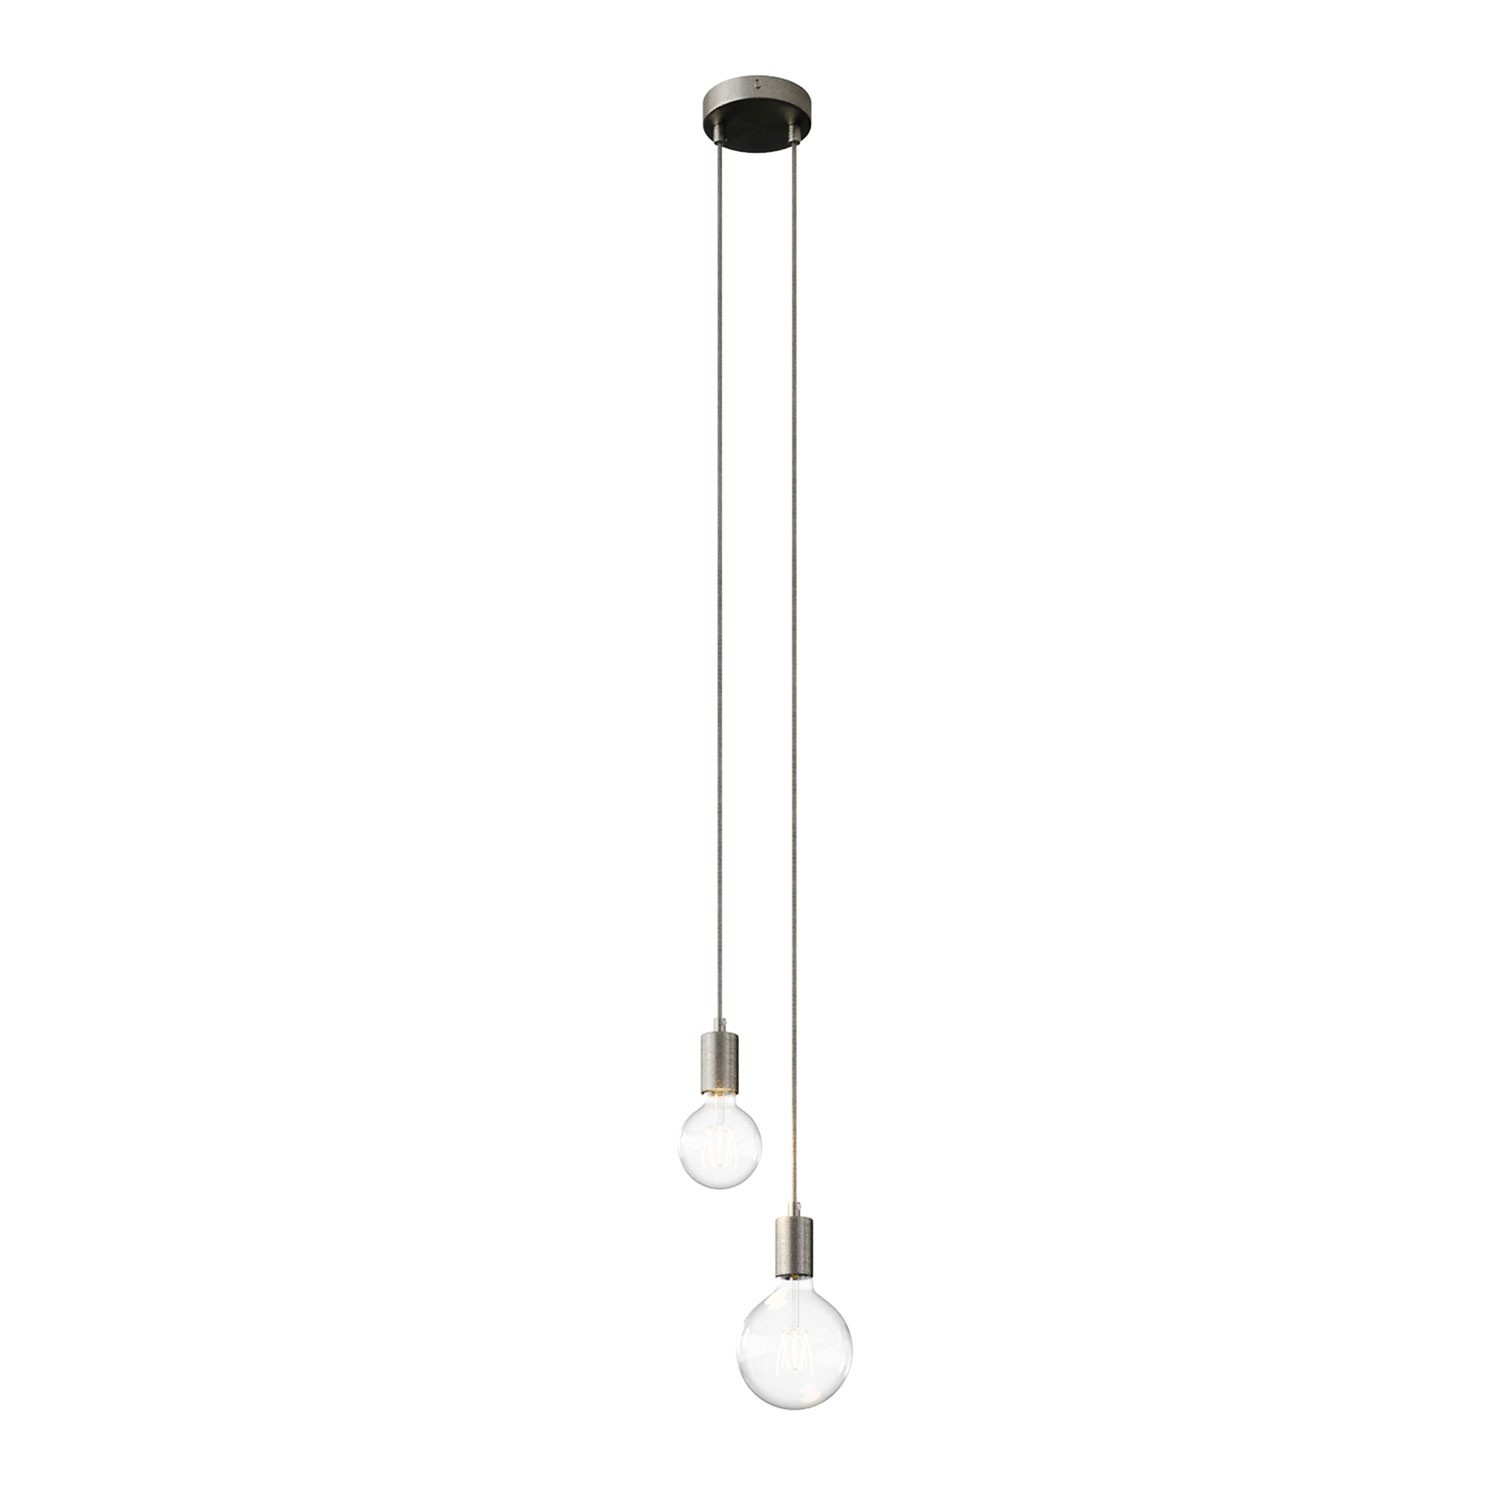 Lámpara colgante múltiple de 2 caídas completa con cable textil y acabados metálicos